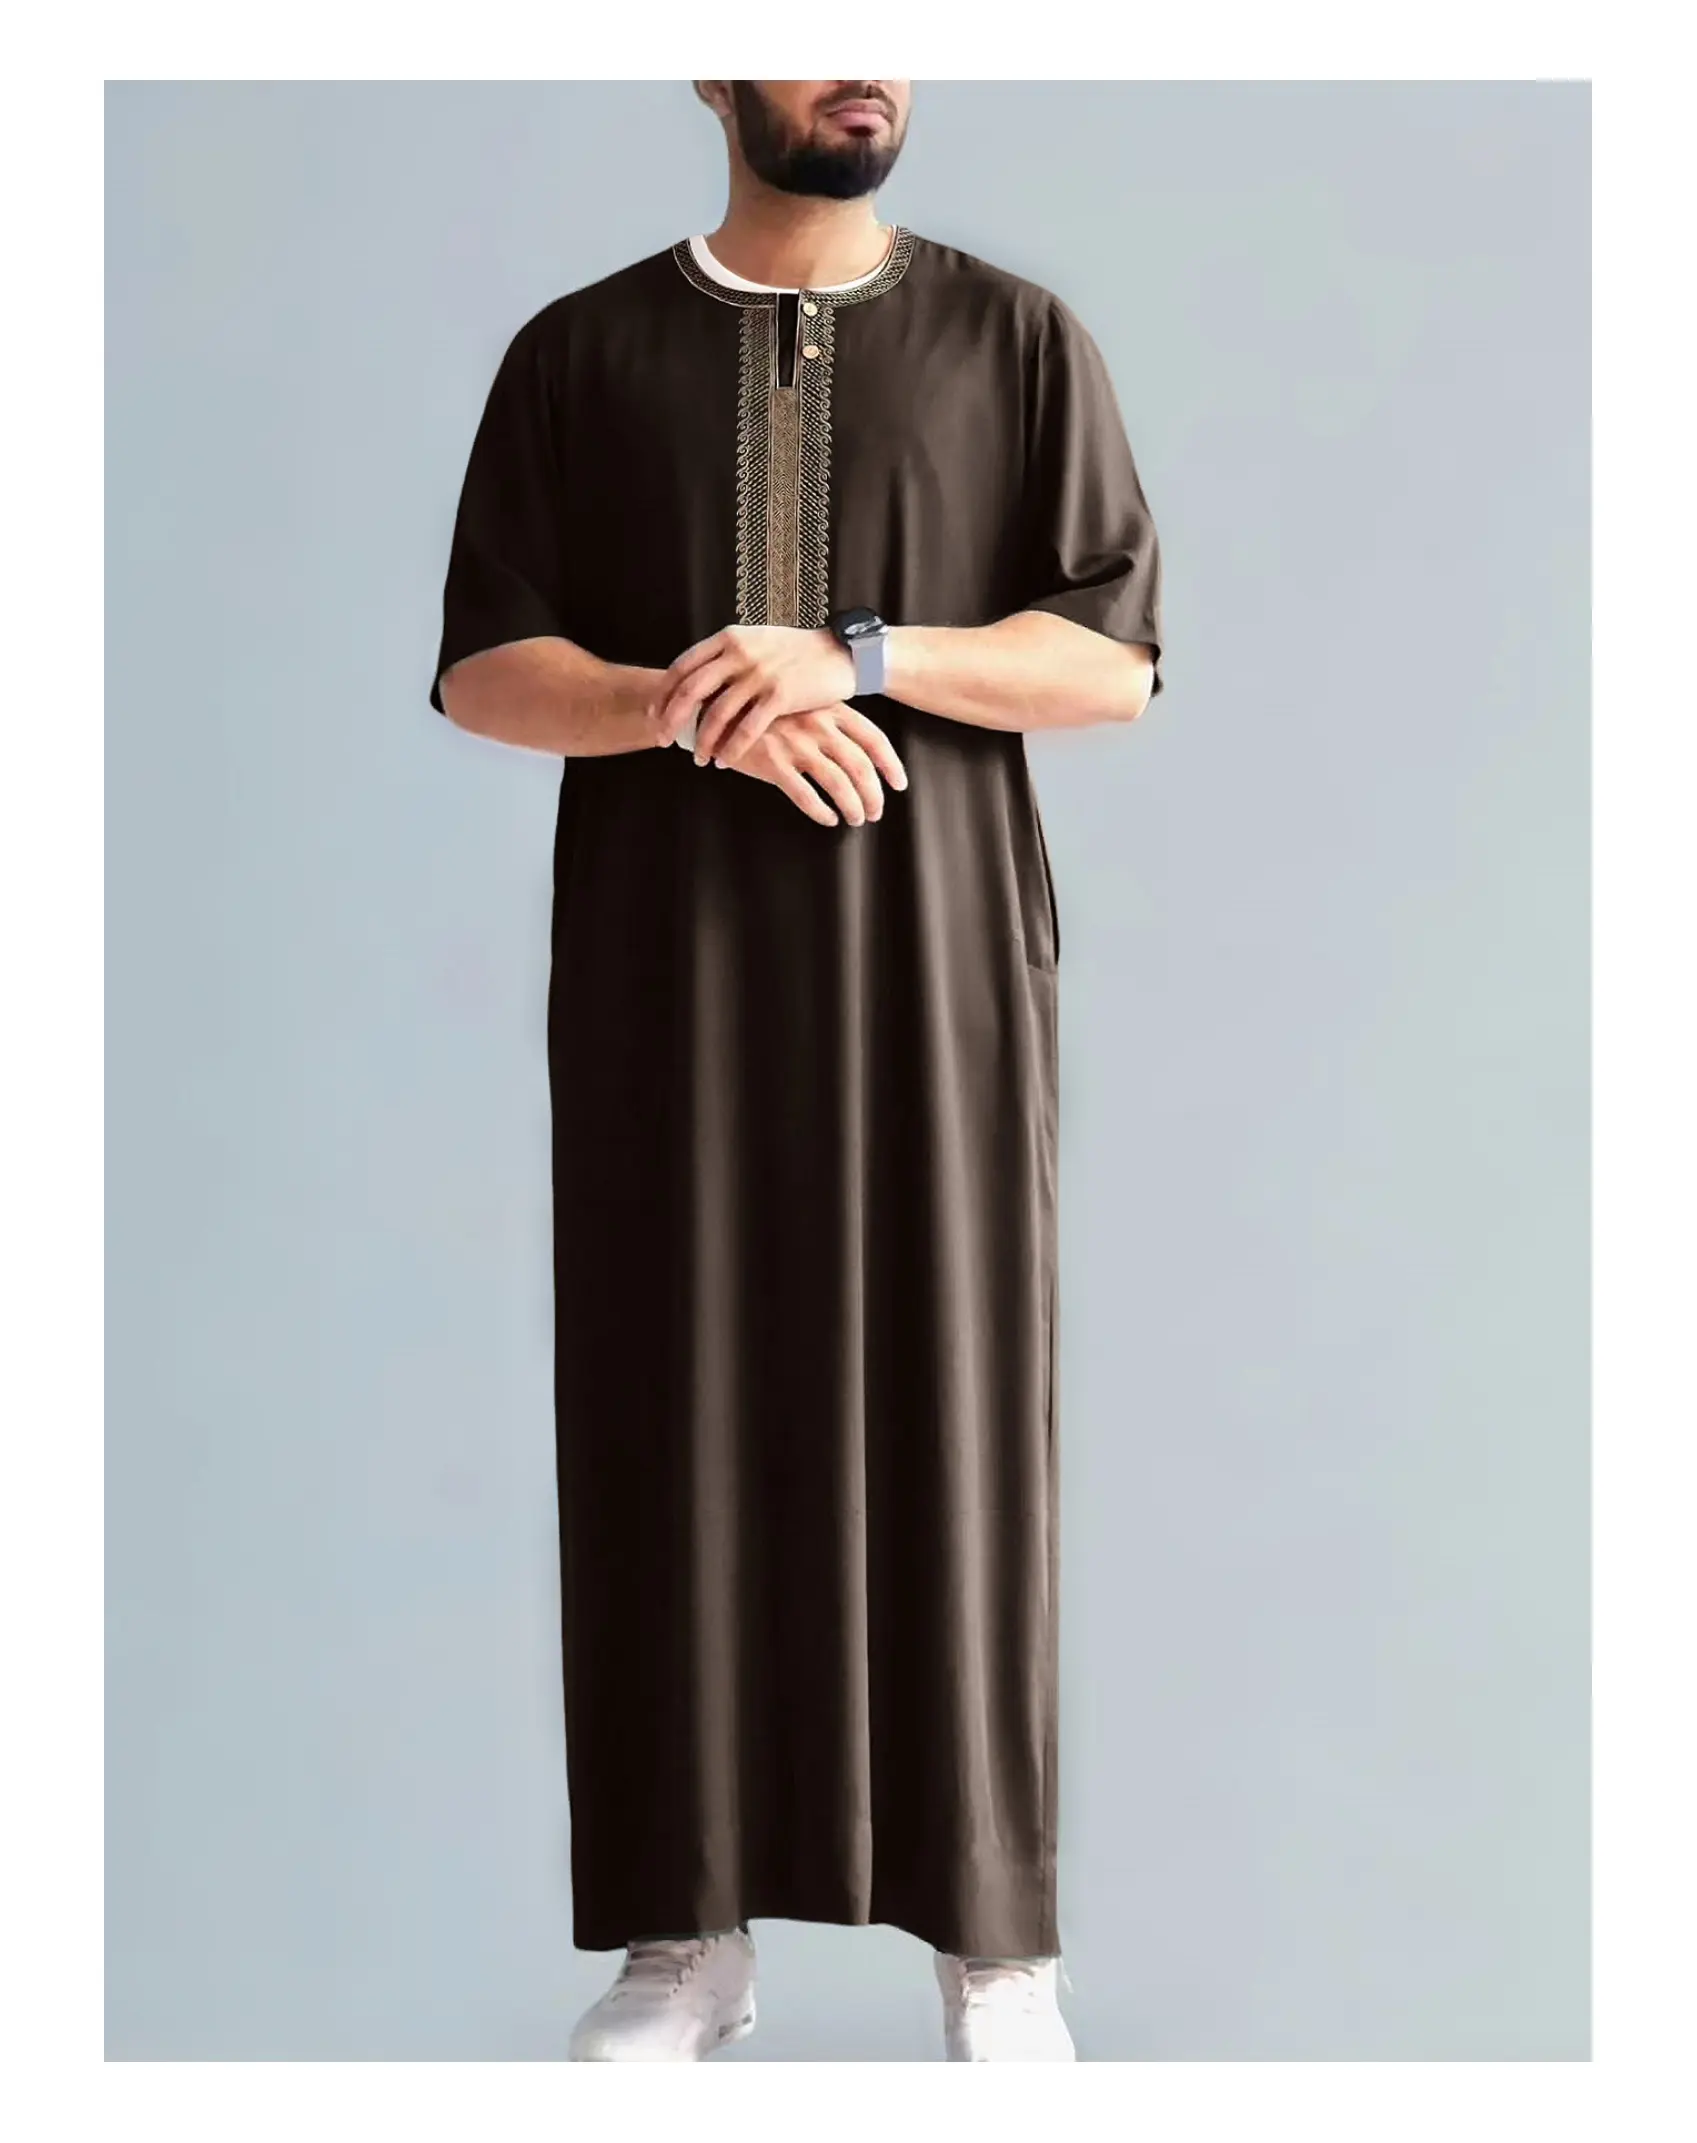 Herren islamisches Kleid muslimischer Kaftan kurze Ärmel rundhalsausschnitt Vintage Röcke lässig Dubai Saudi-Arabien Herren Jubba Thobe